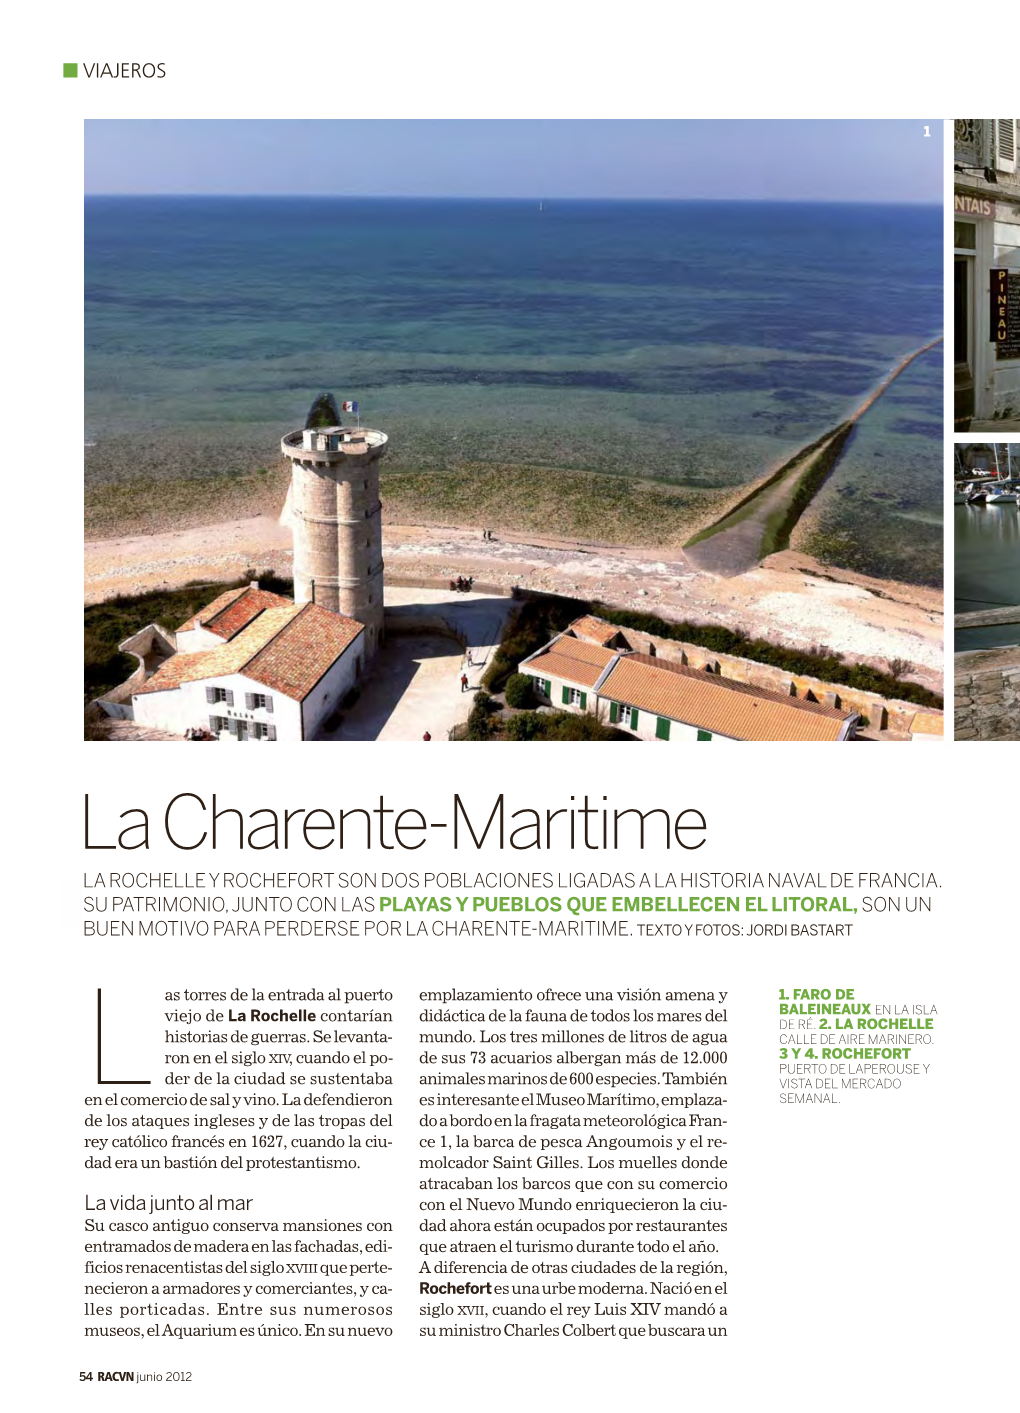 La Charente-Maritime LA ROCHELLE Y ROCHEFORT SON DOS POBLACIONES LIGADAS a LA HISTORIA NAVAL DE FRANCIA